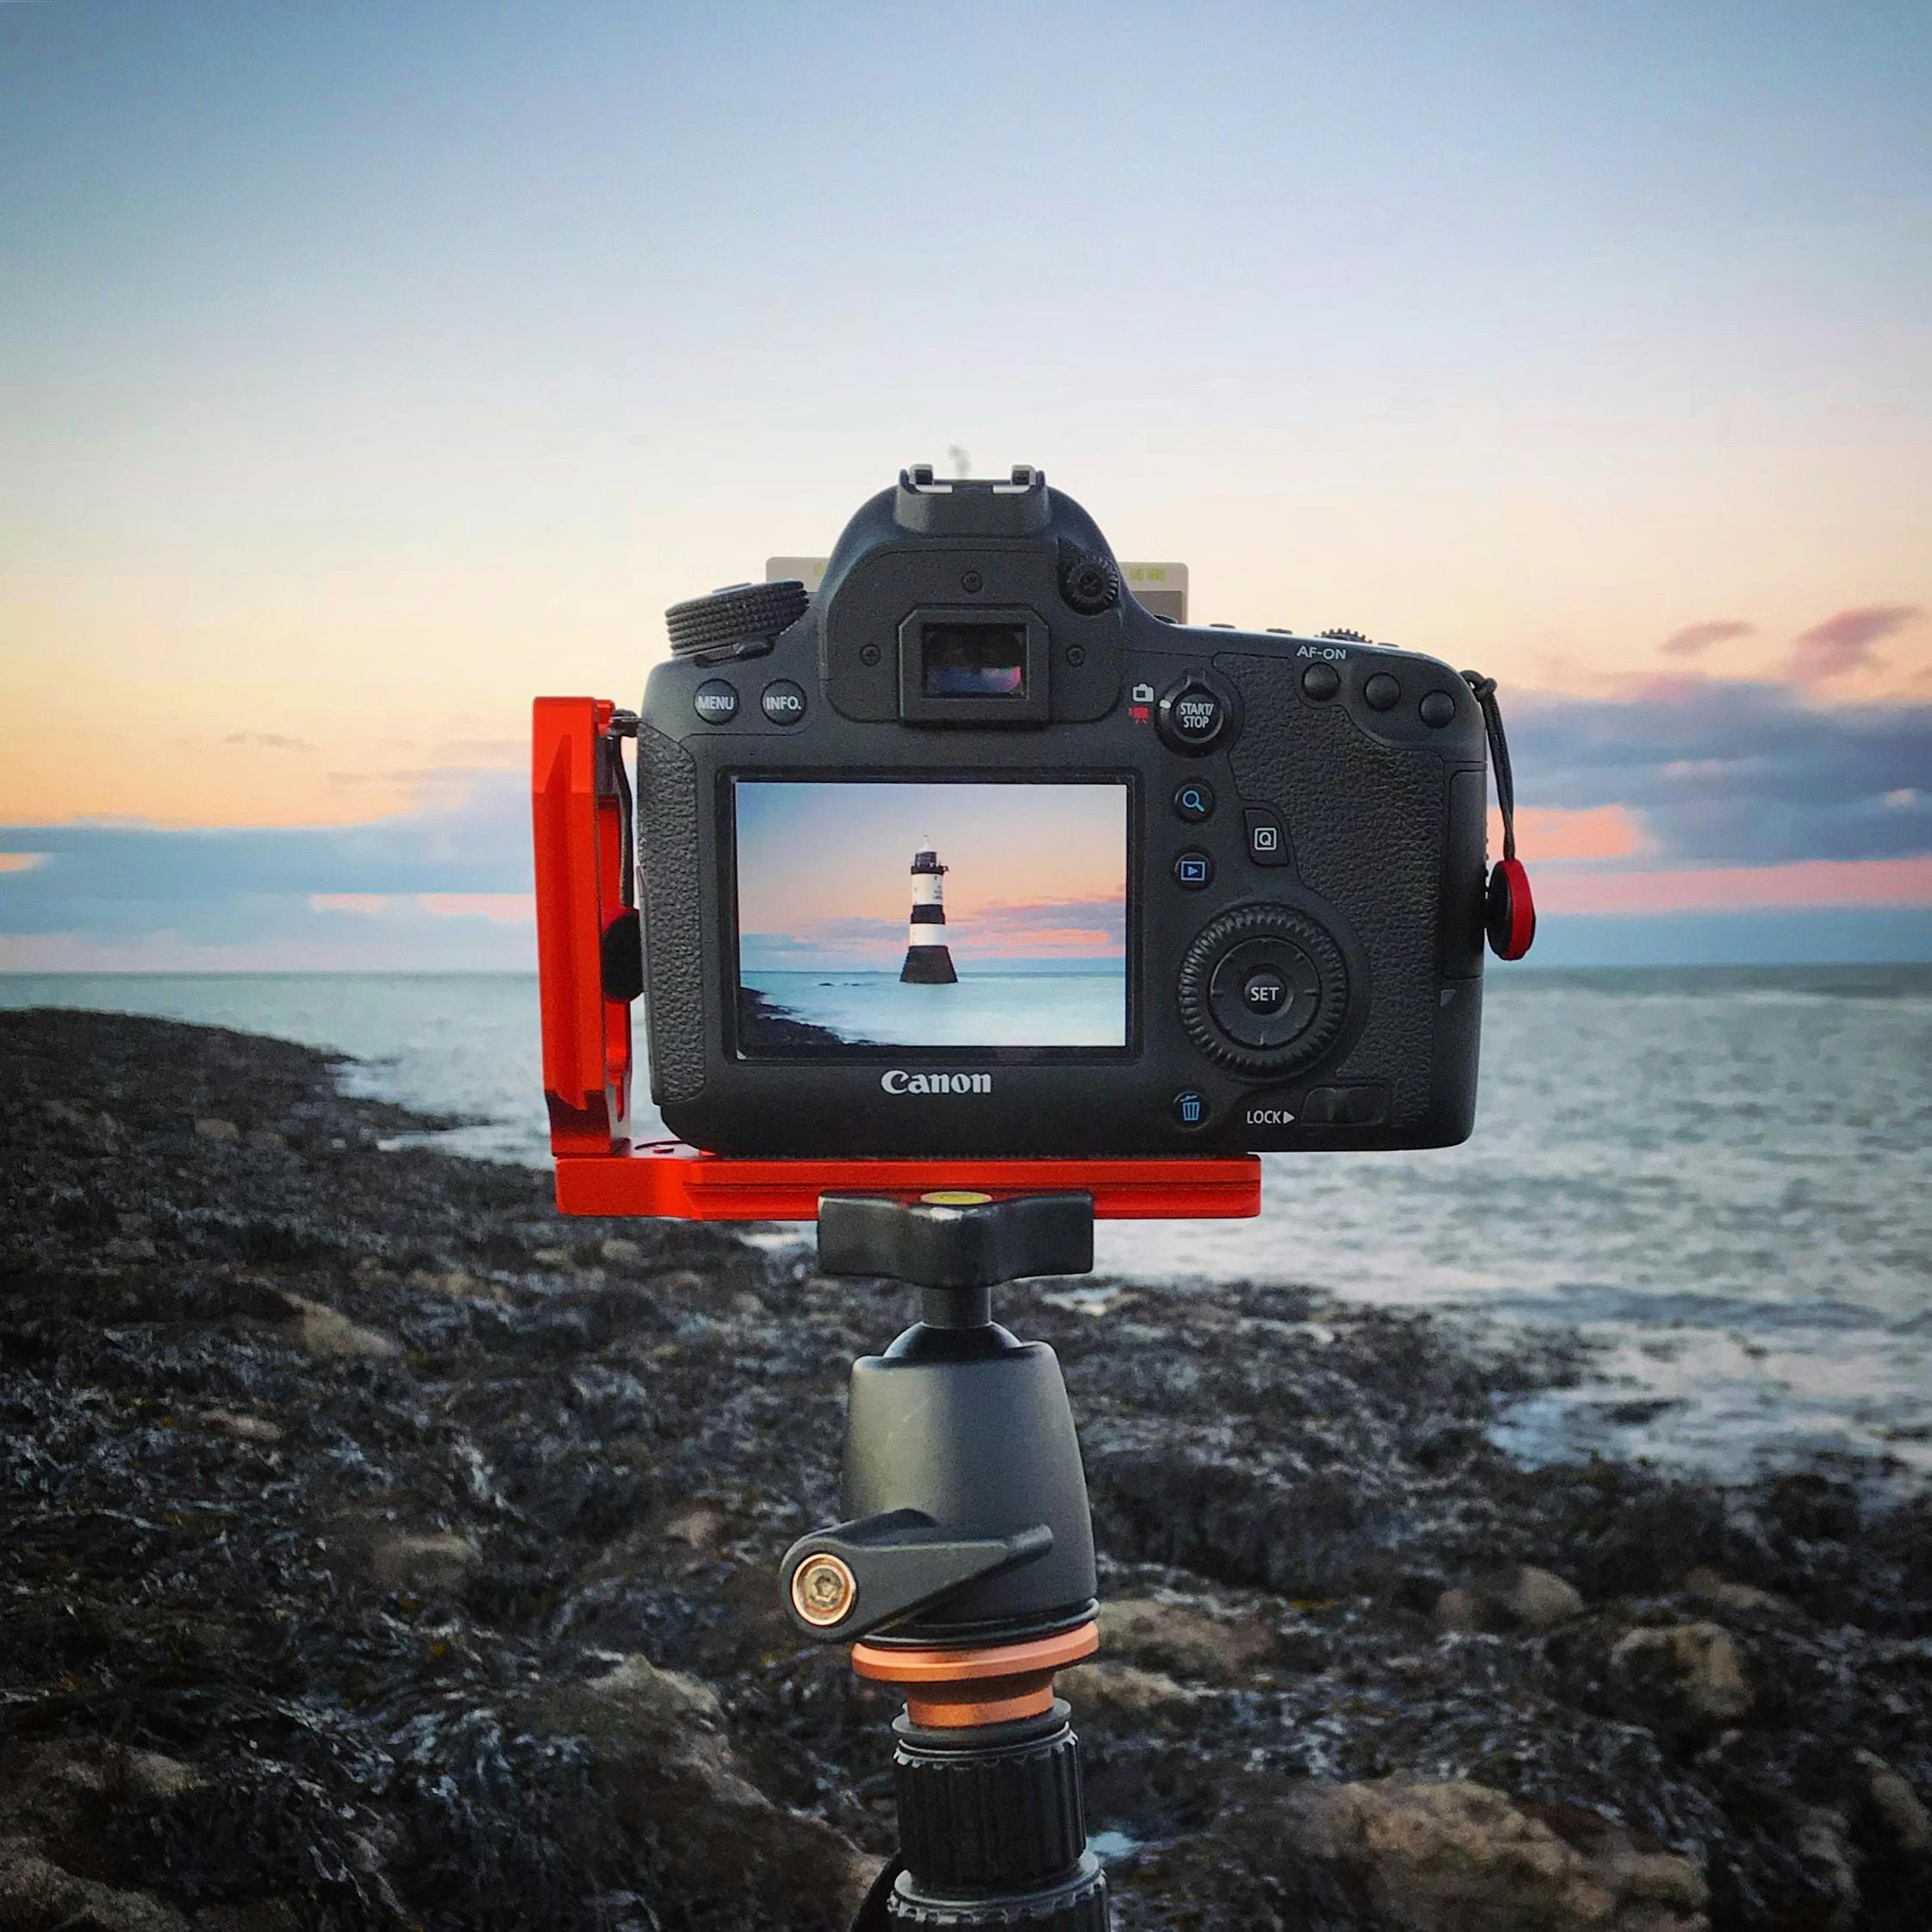 een digitale camera zit op een statief in een kustscene - soorten camera' s | digitale